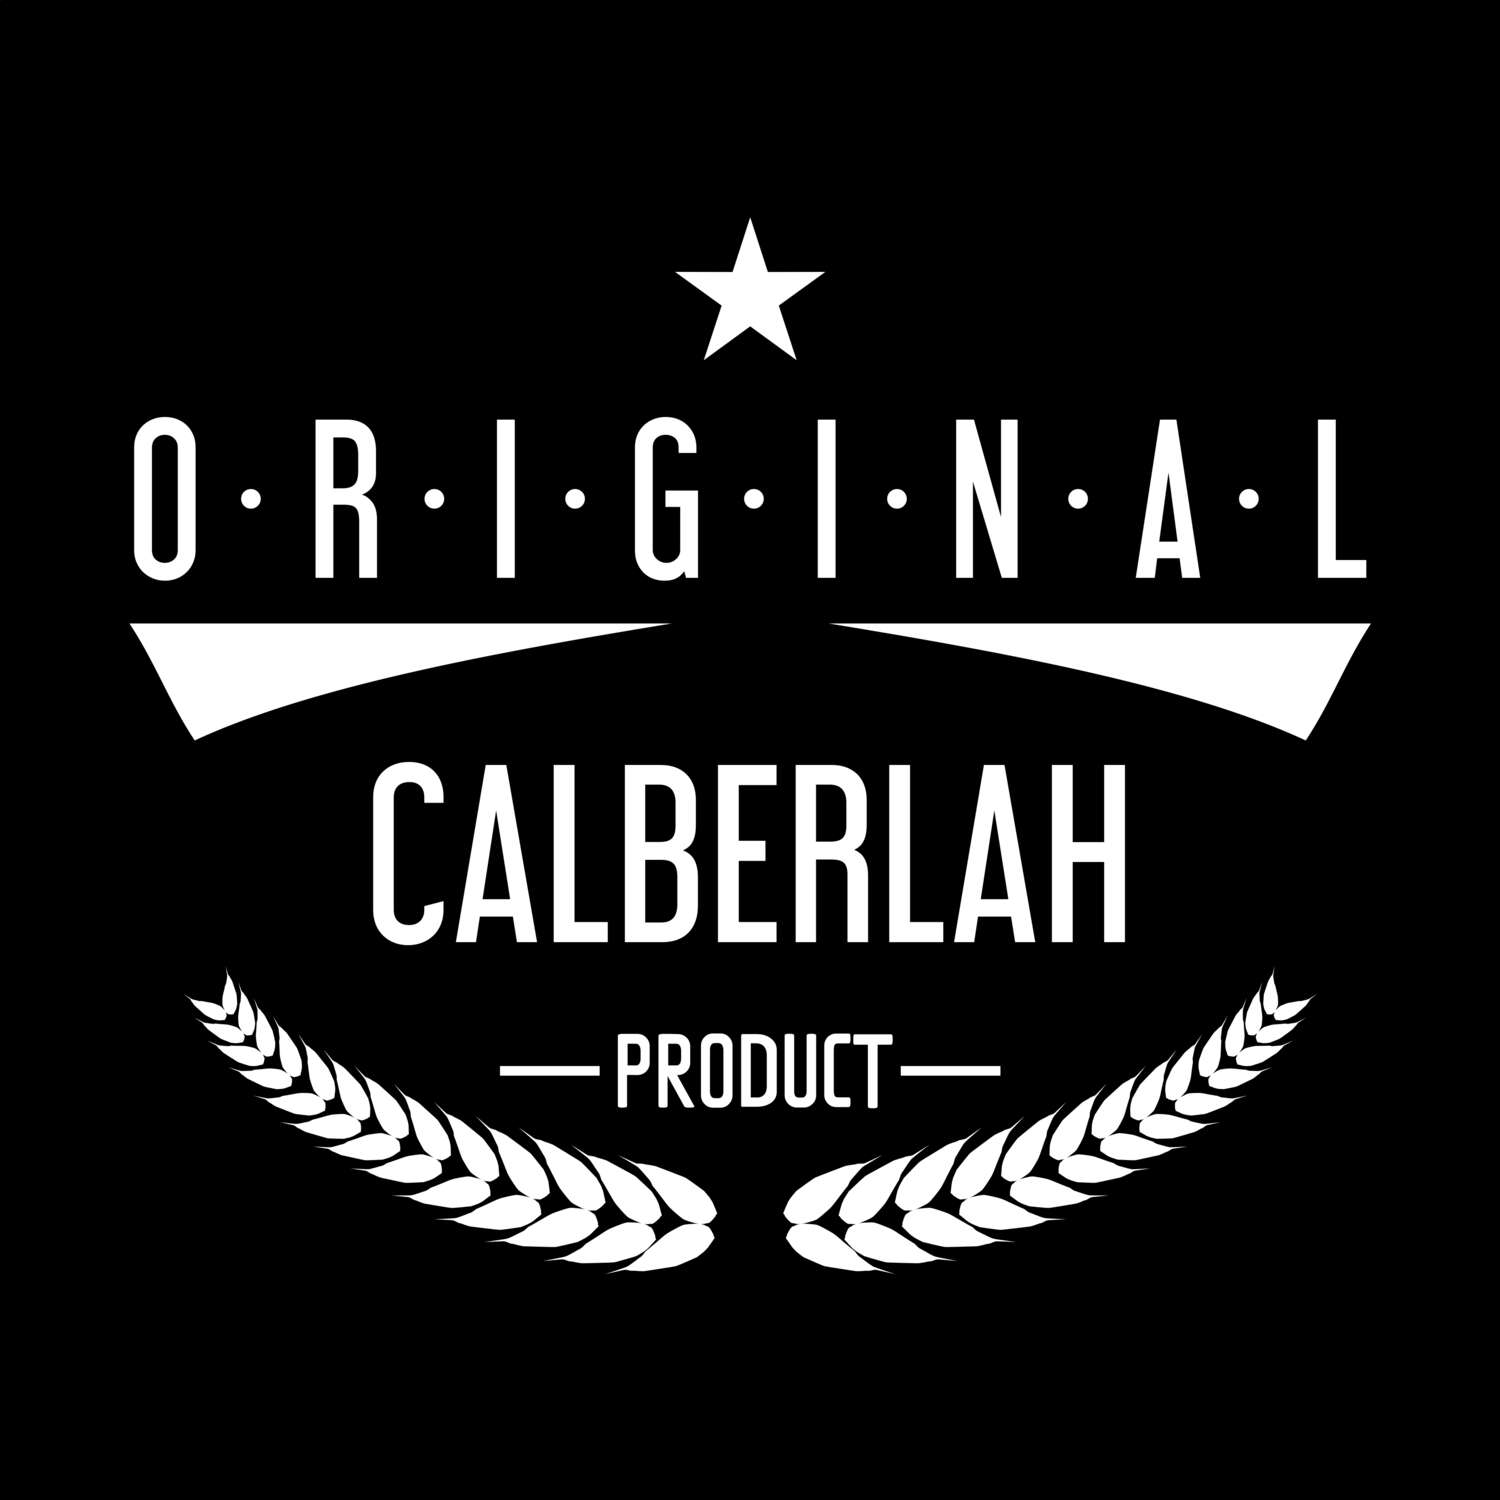 Calberlah T-Shirt »Original Product«